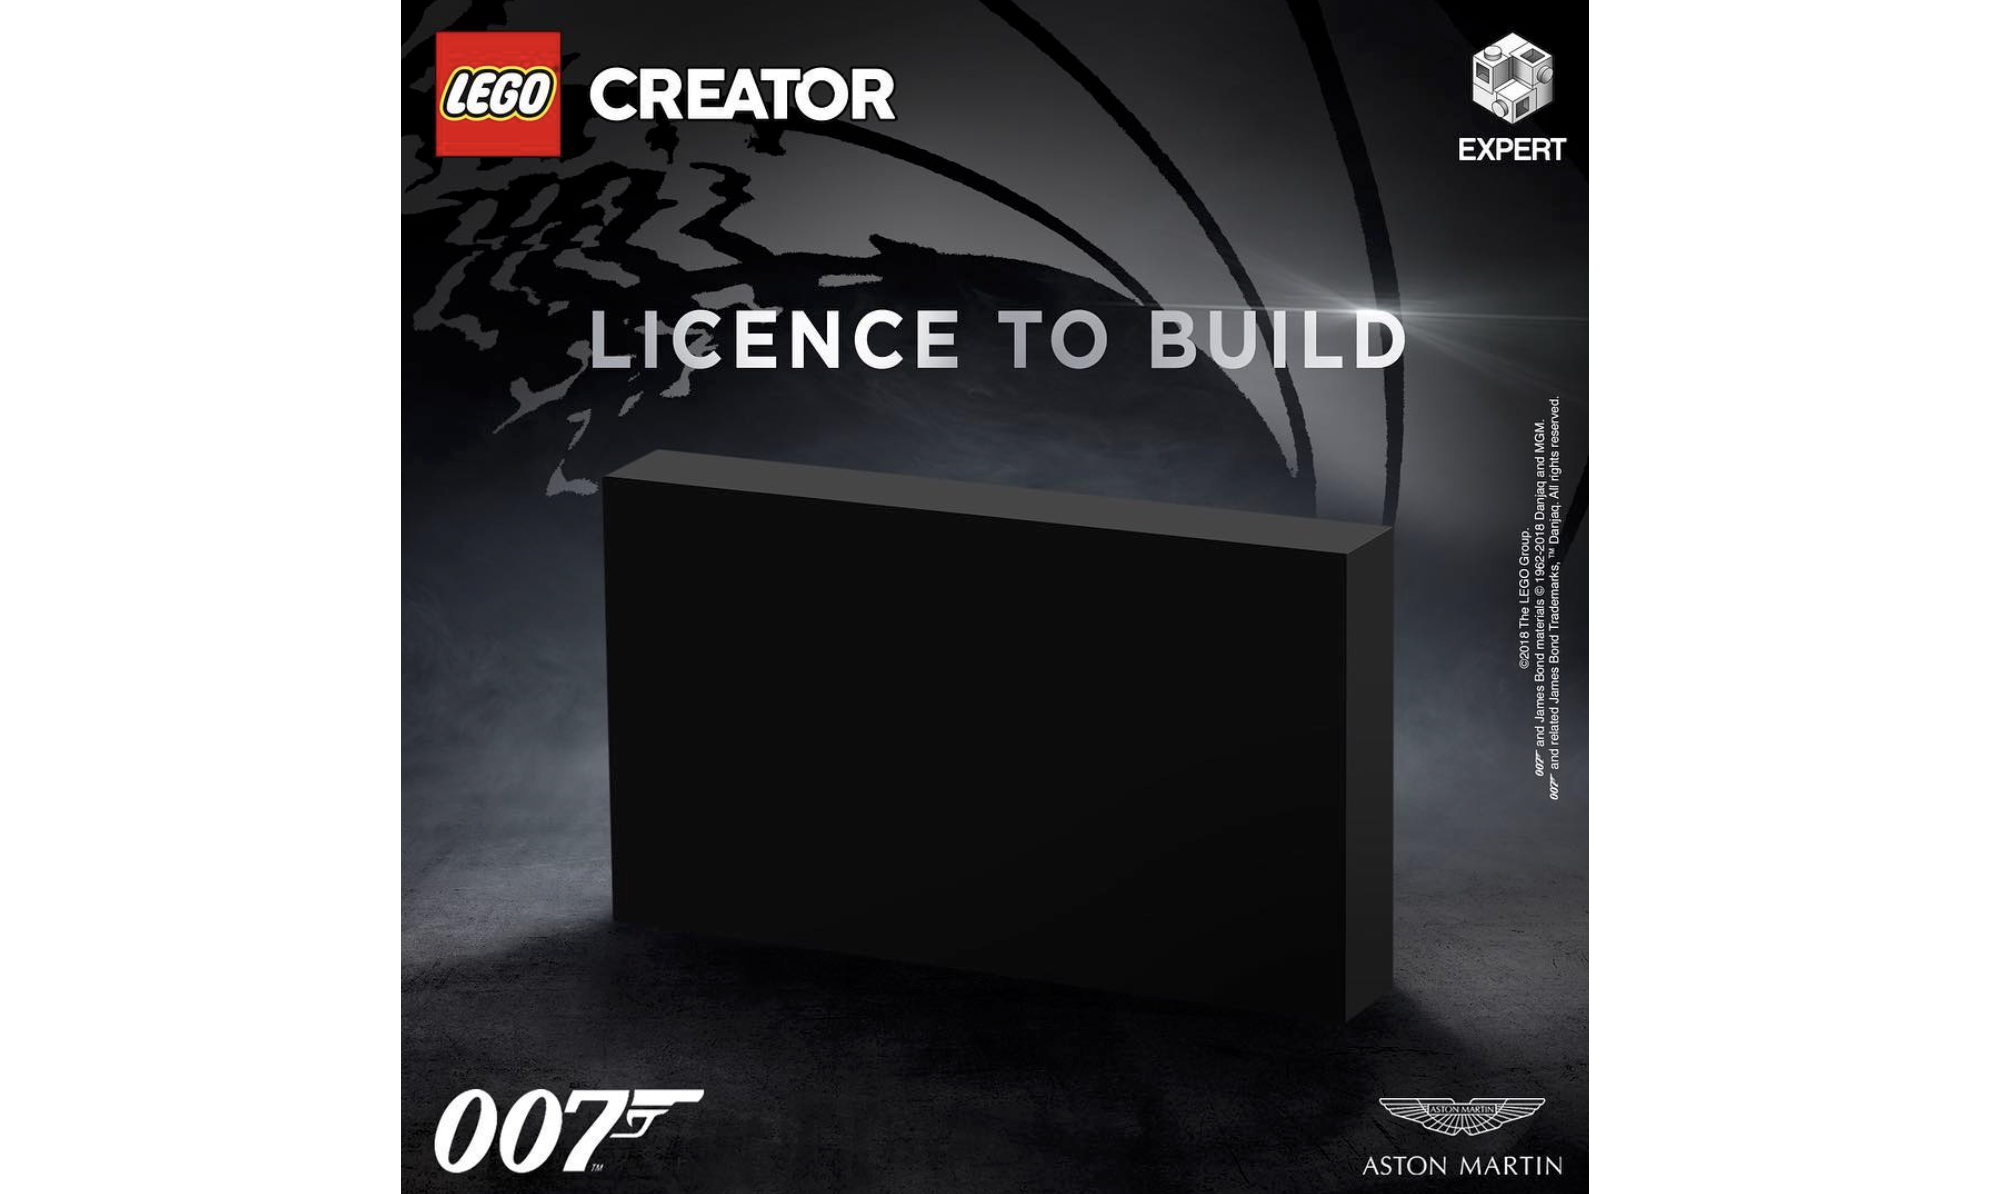 乐高将推出 007 经典座驾阿斯顿马丁跑车积木模型